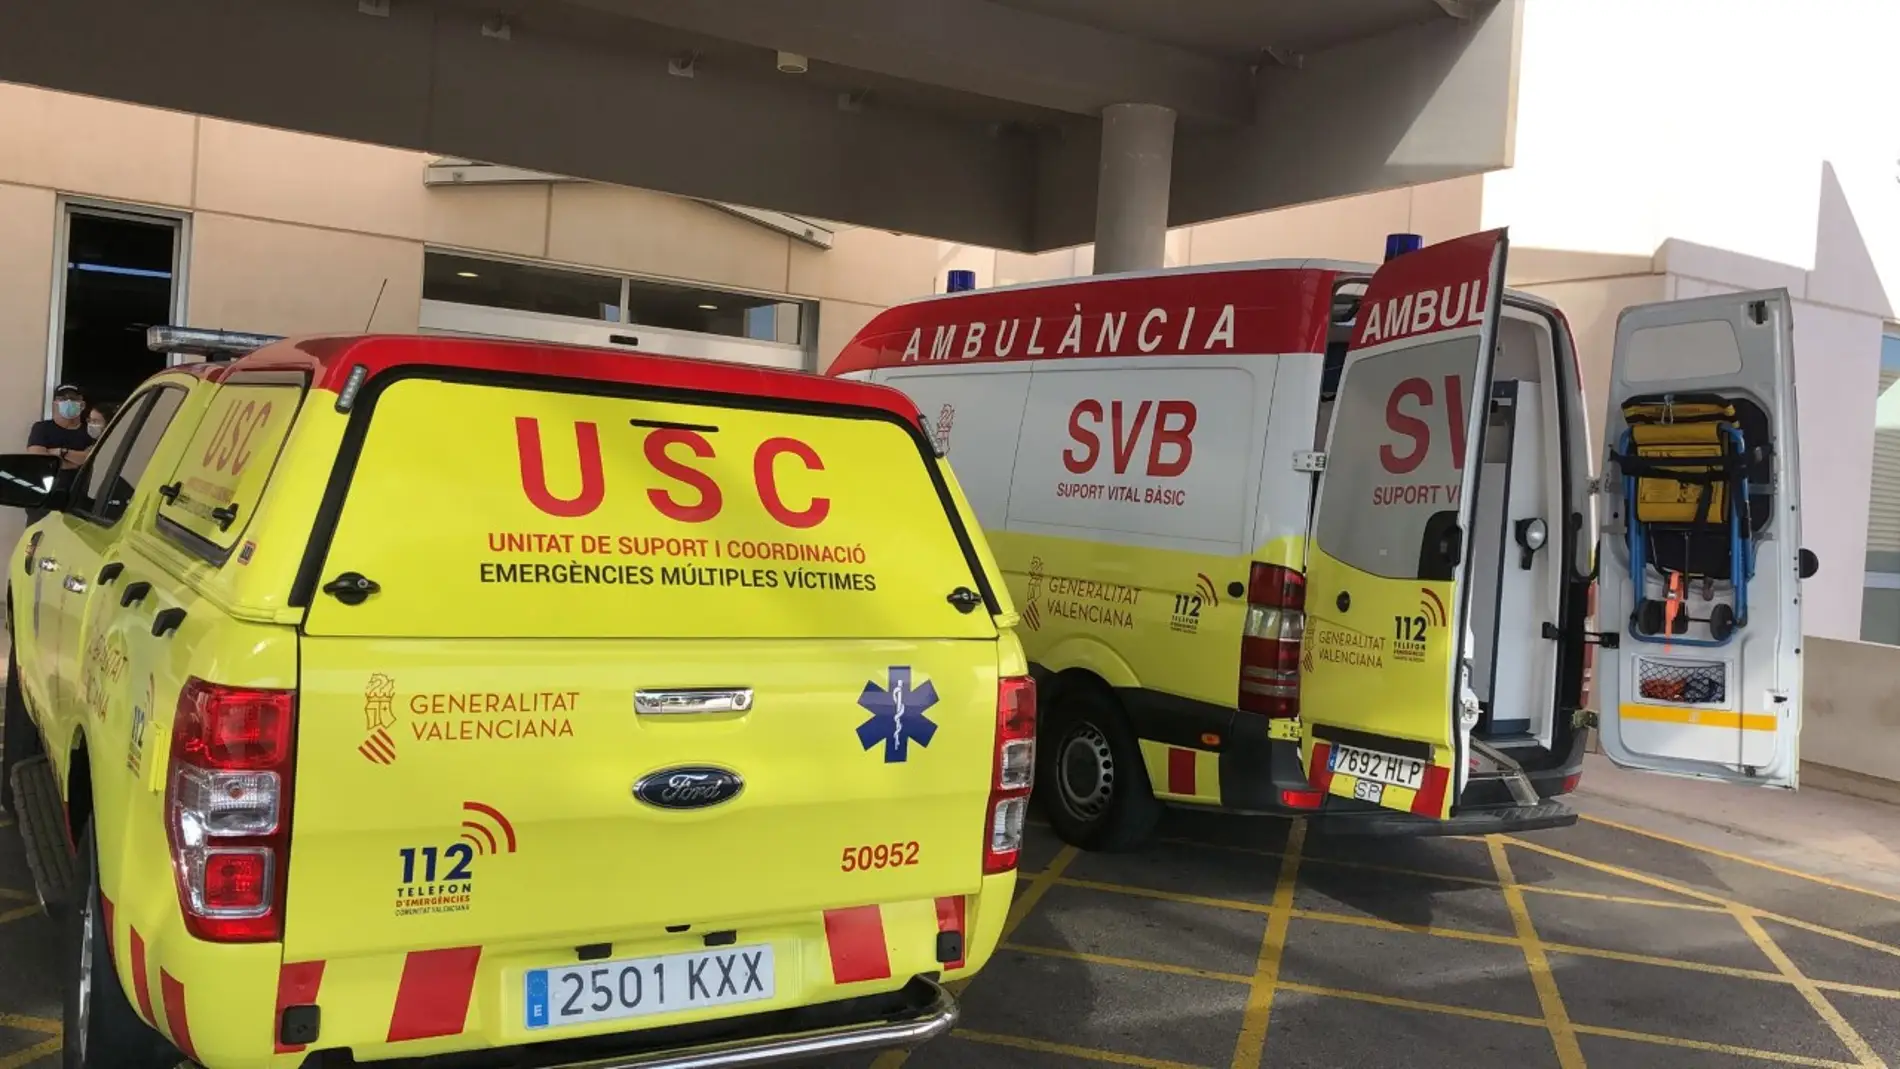 La ambulancia SAMU desplazada a Santa Pola vuelve en septiembre a Elche y a la villa marinera va el VIR